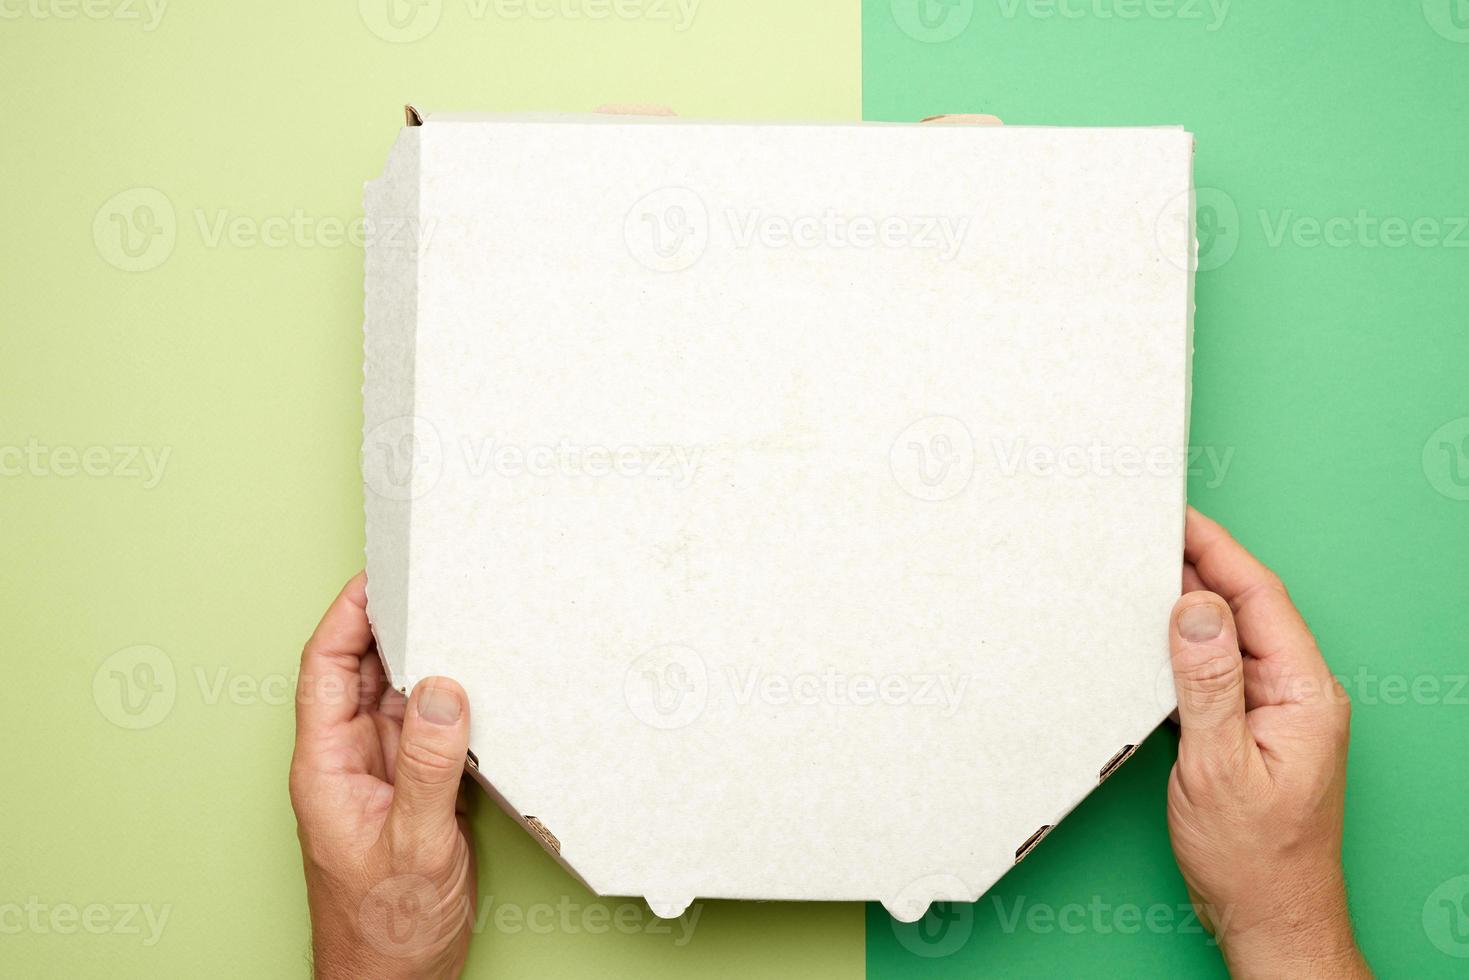 deux mains masculines tiennent une boîte en carton blanche avec de la pizza photo